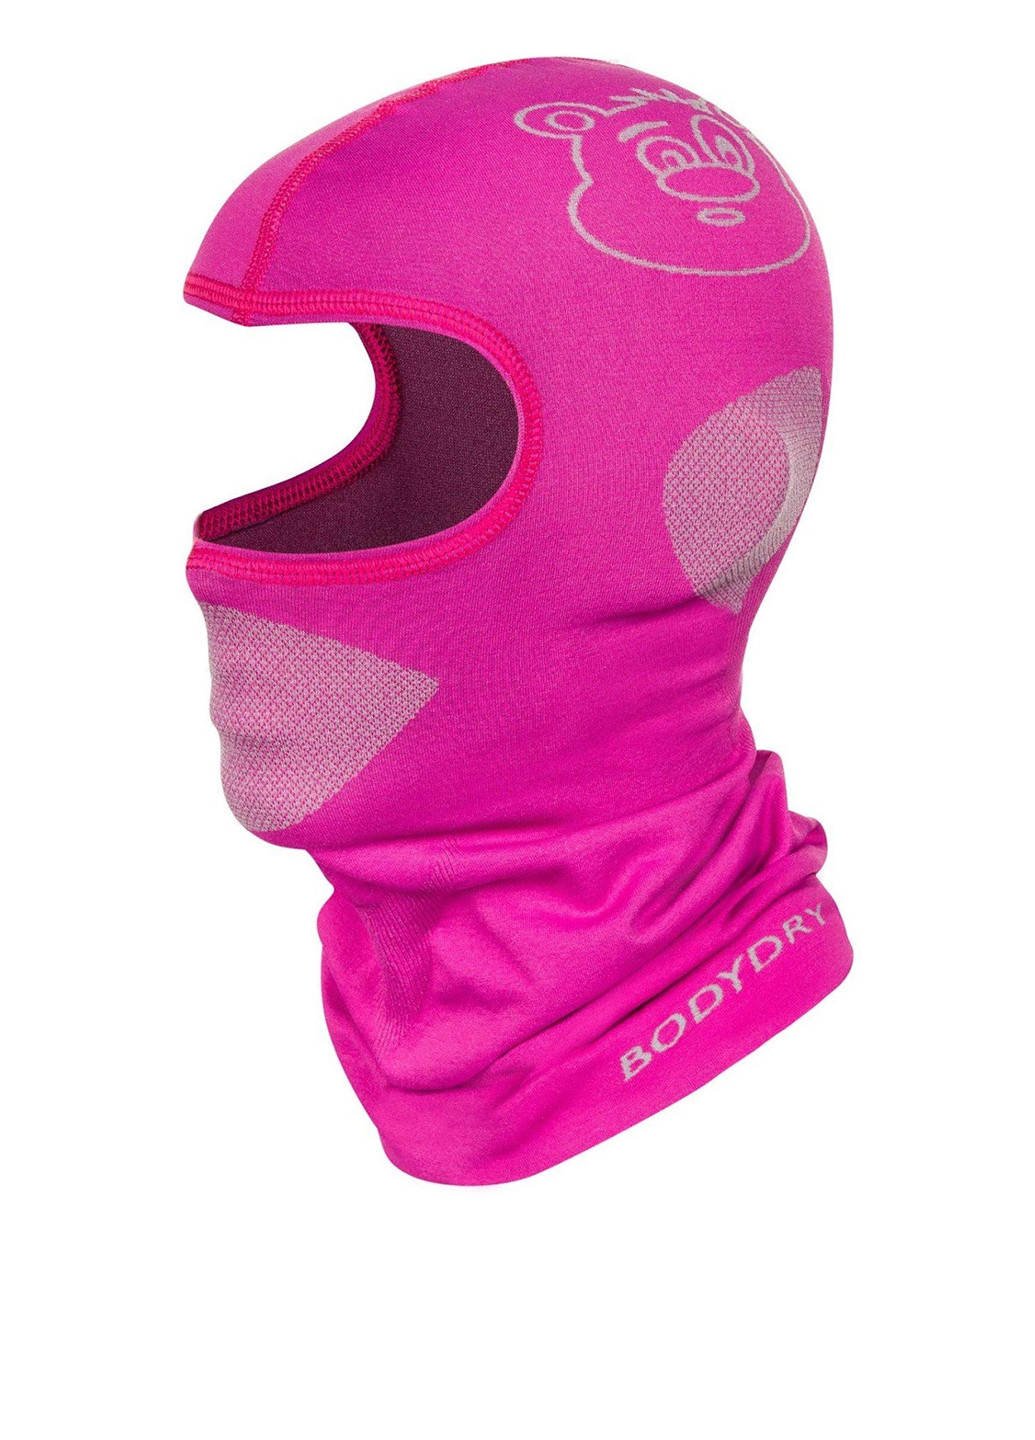 Body Dry балаклава однодырочная рисунок розовый спортивный полиамид производство - Польша